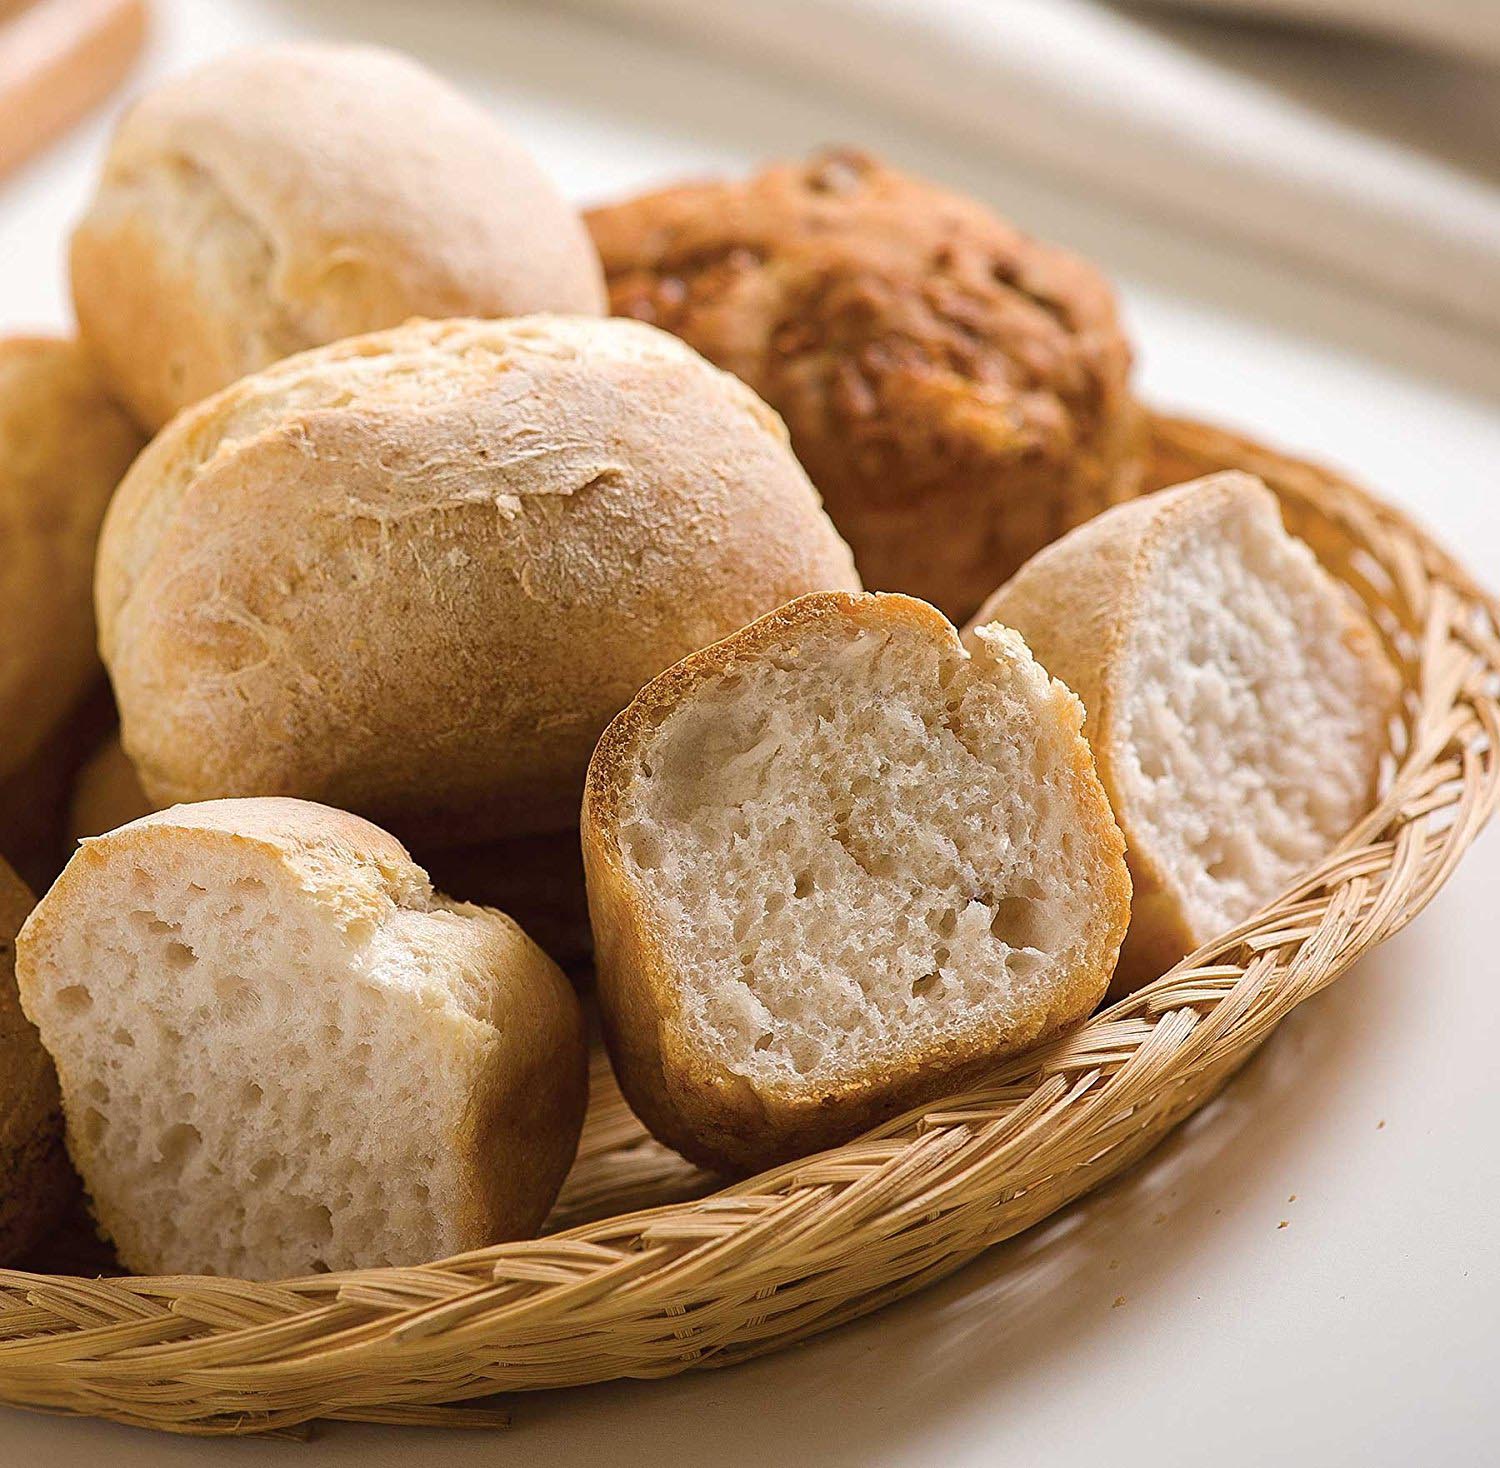 Macchina del pane: i migliori modelli da acquistare